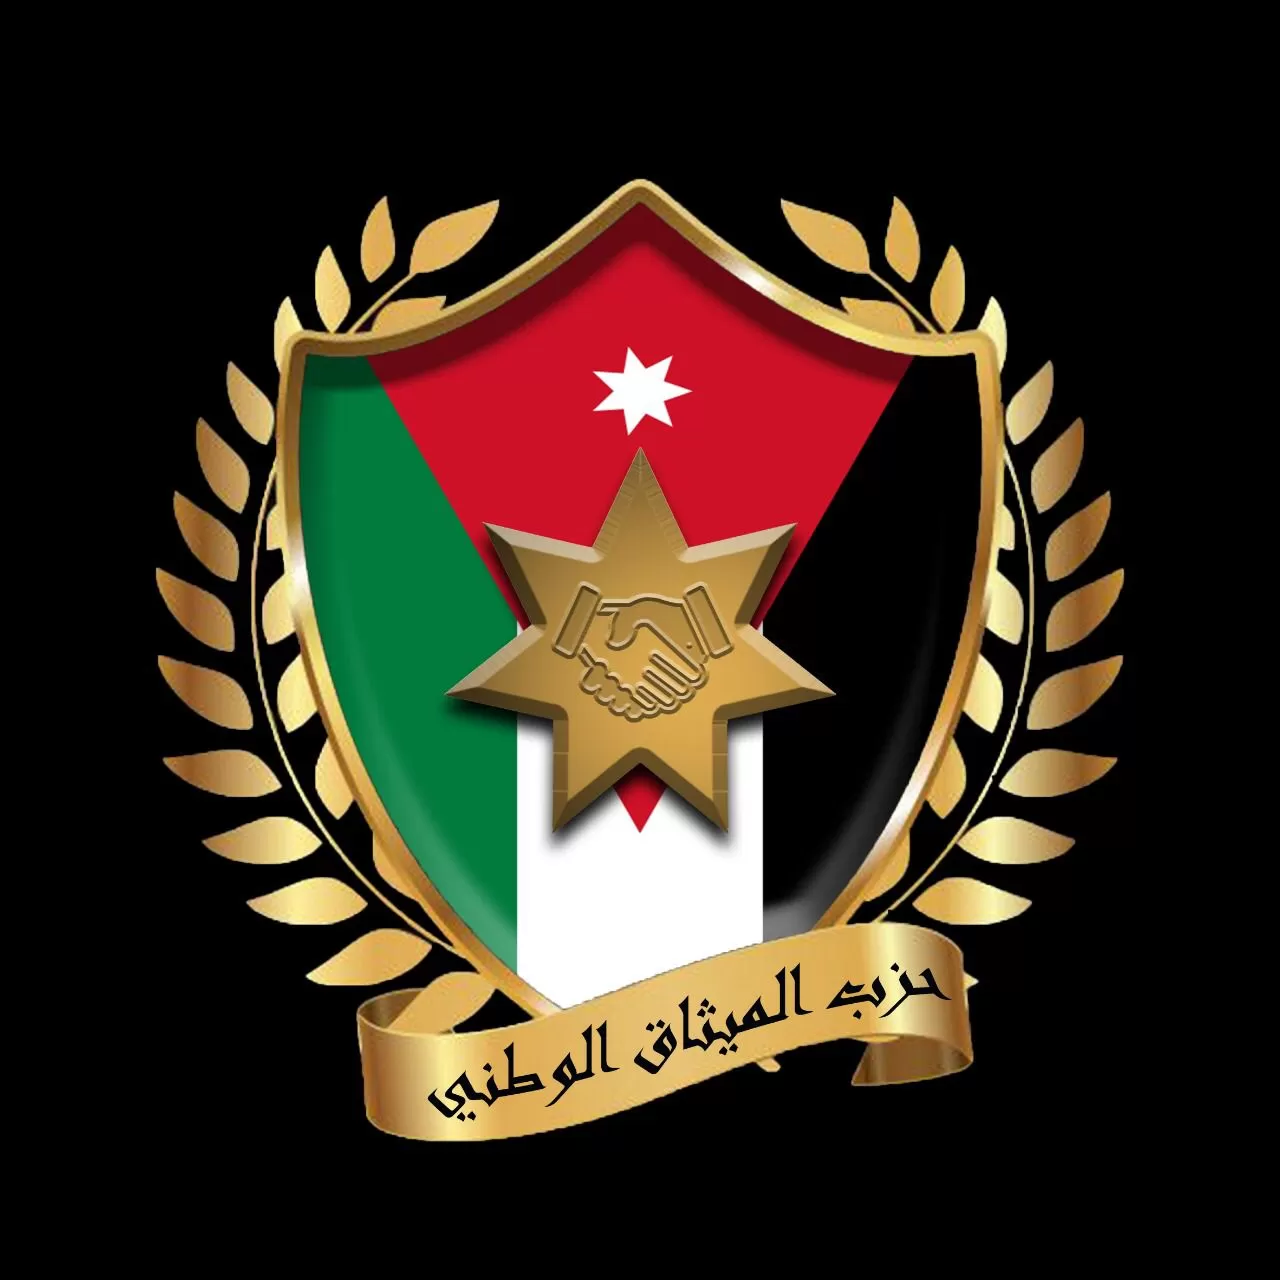 مدار الساعة, مناسبات أردنية,حزب الميثاق الوطني,رؤية التحديث الاقتصادي,الأردن